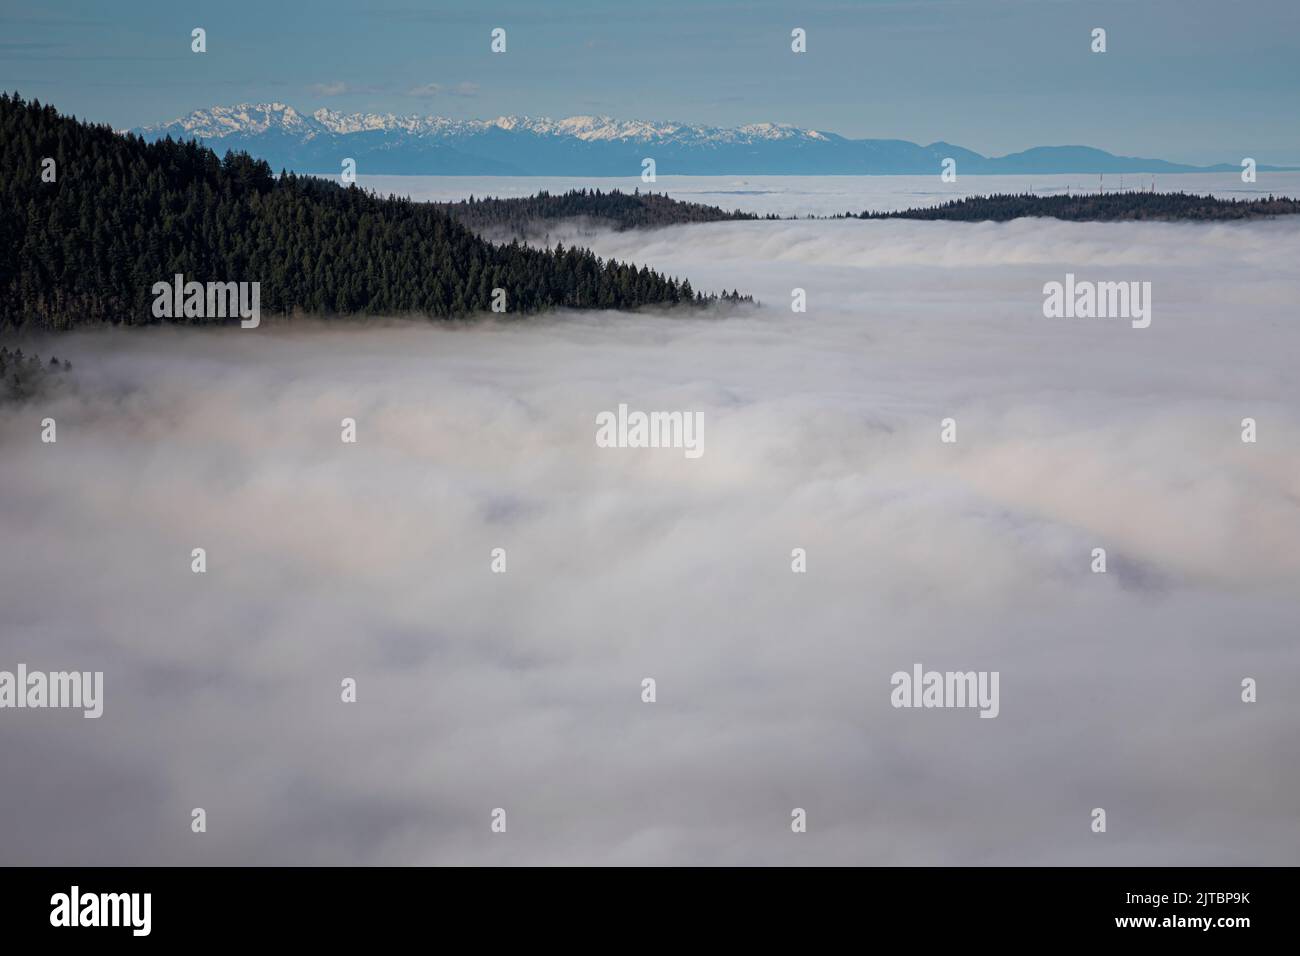 WA21909-00...WASHINGTON - nebbia Lowland che copre il Puget Sound Basin con vista di Cougar Mountain e le Olympic Mountains da Poo Poo Point nel Foto Stock